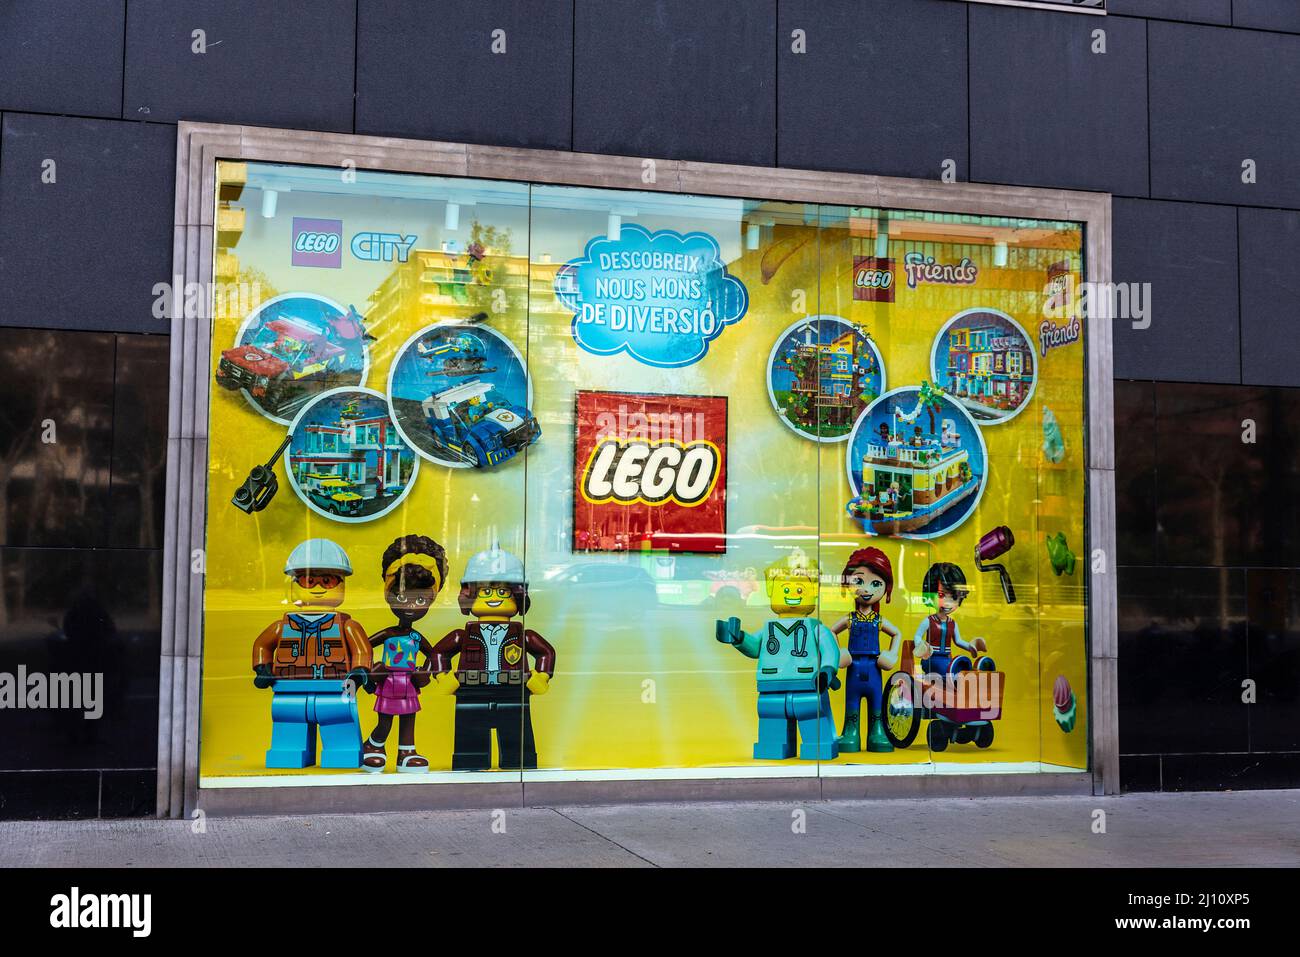 Barcelone, Espagne - 24 février 2022: Magasin LEGO, connu pour la fabrication de jouets de marque Lego, composé principalement de briques de plastique emboîtées, à Ba Banque D'Images